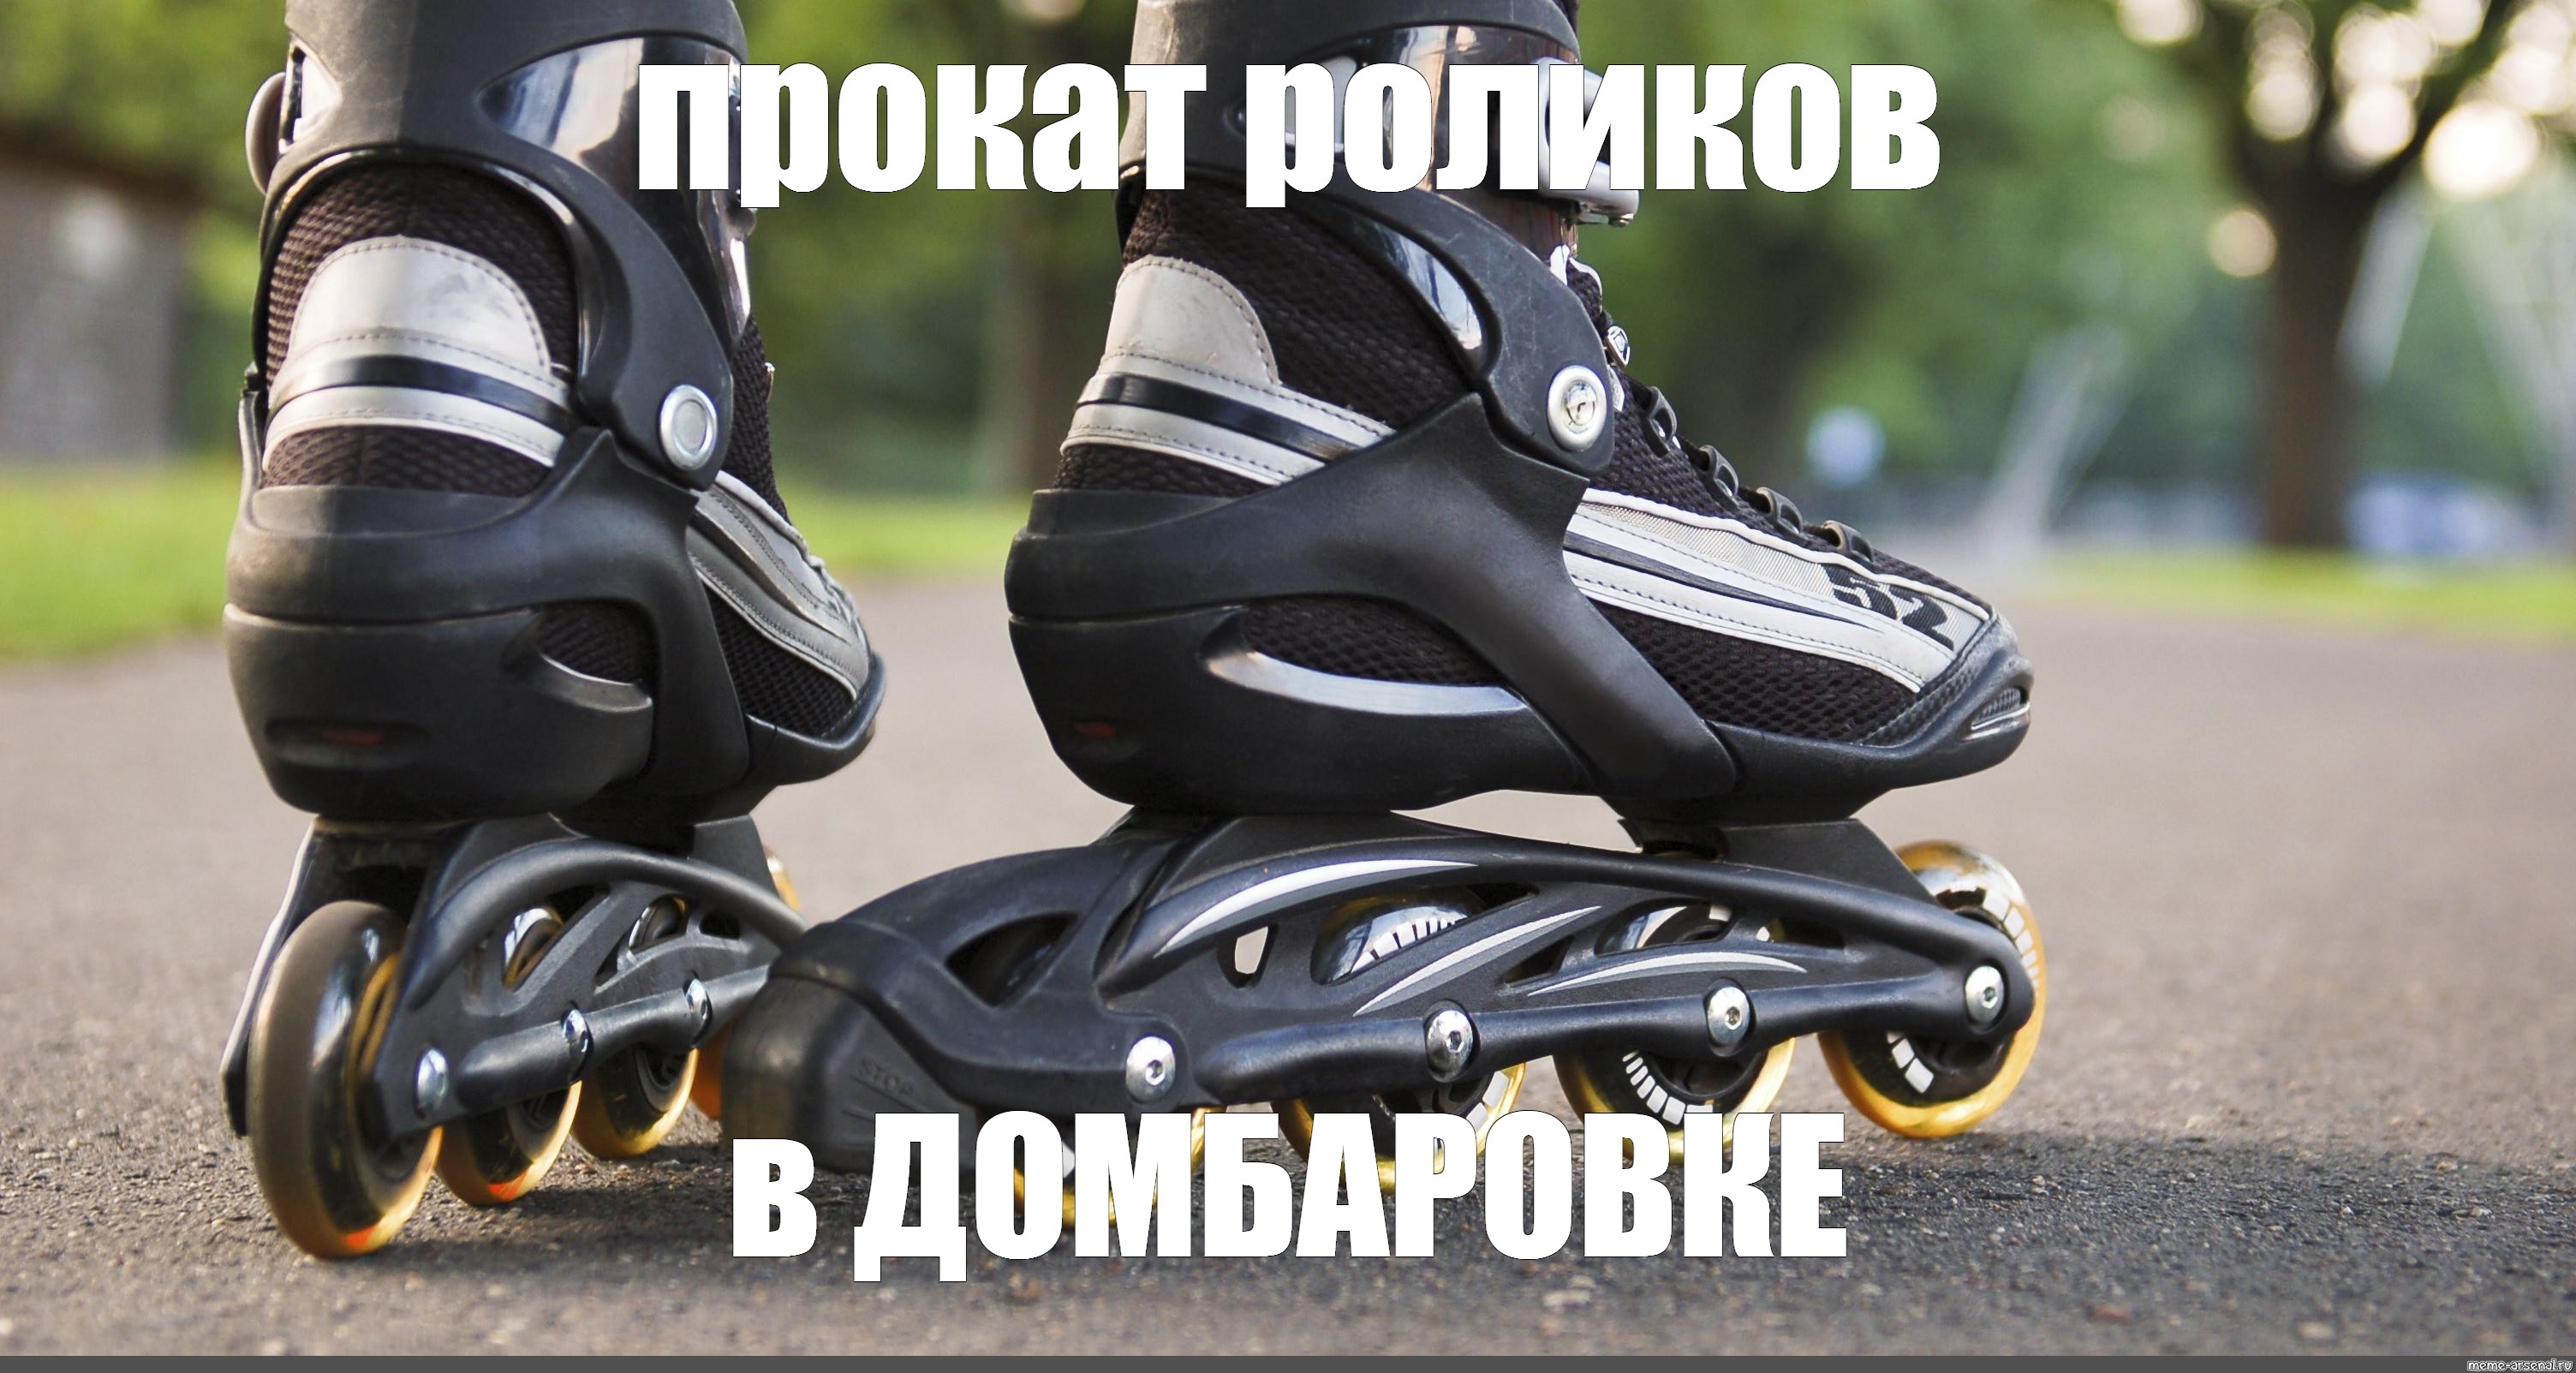 Meme: "inline skates, roller skates, rollers rollerblade" - All T...